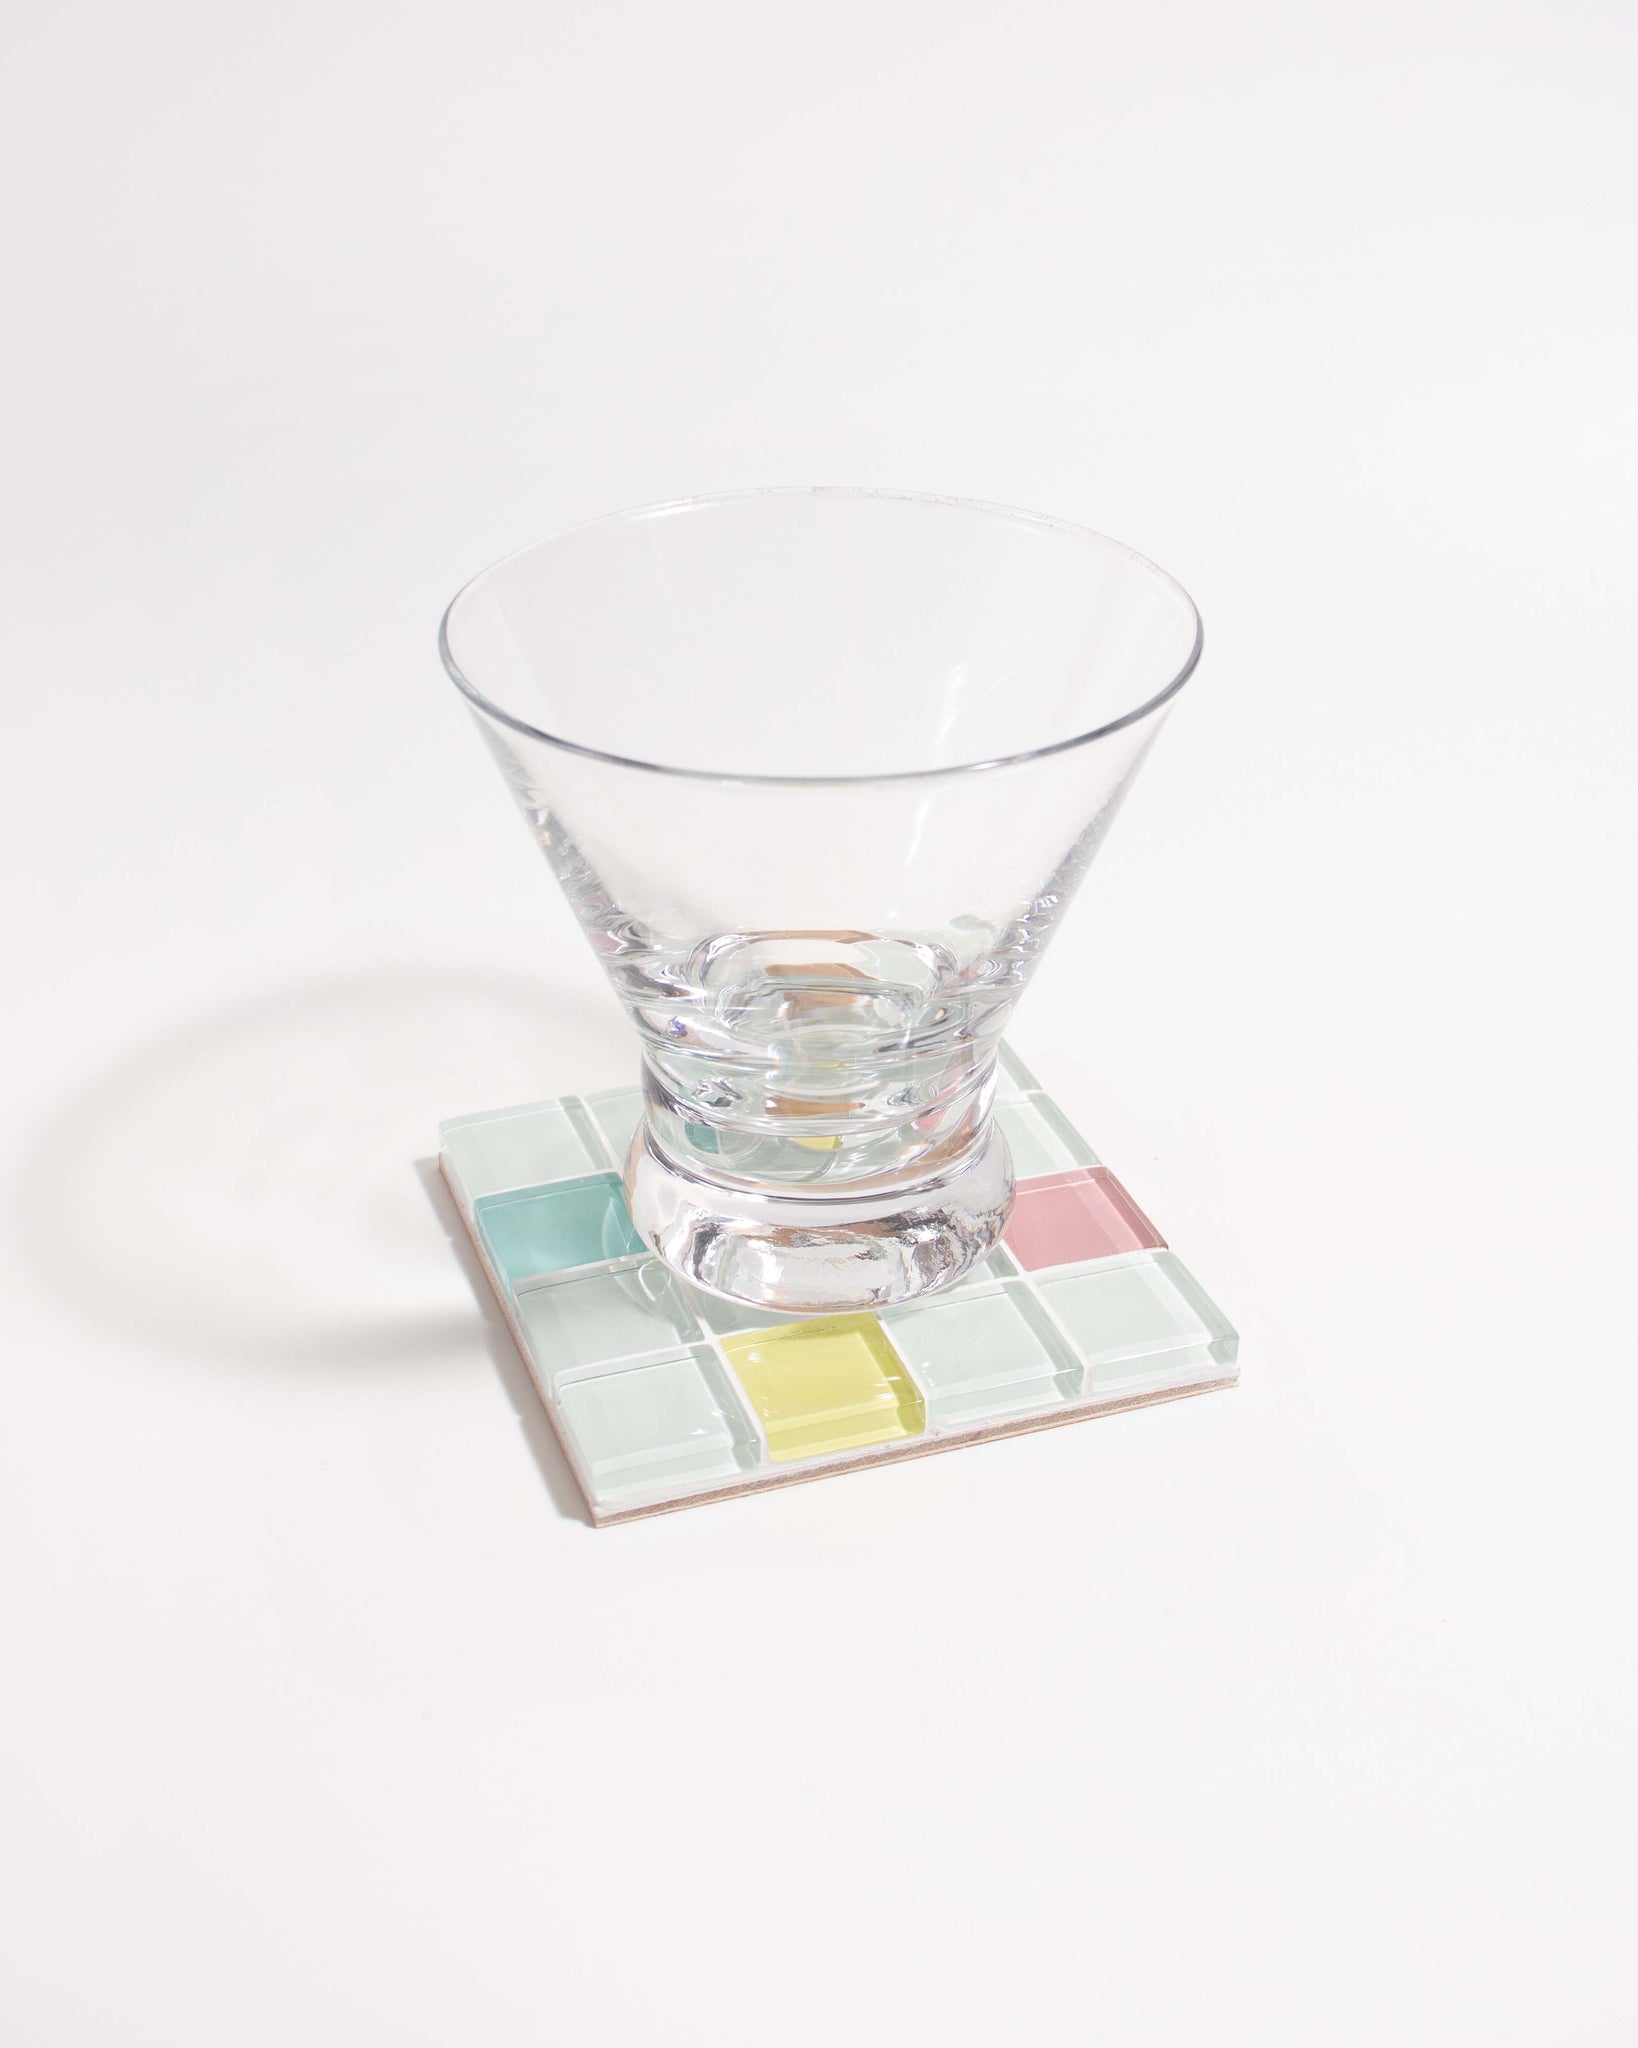 GLASS TILE COASTER - Randomness - Option 1